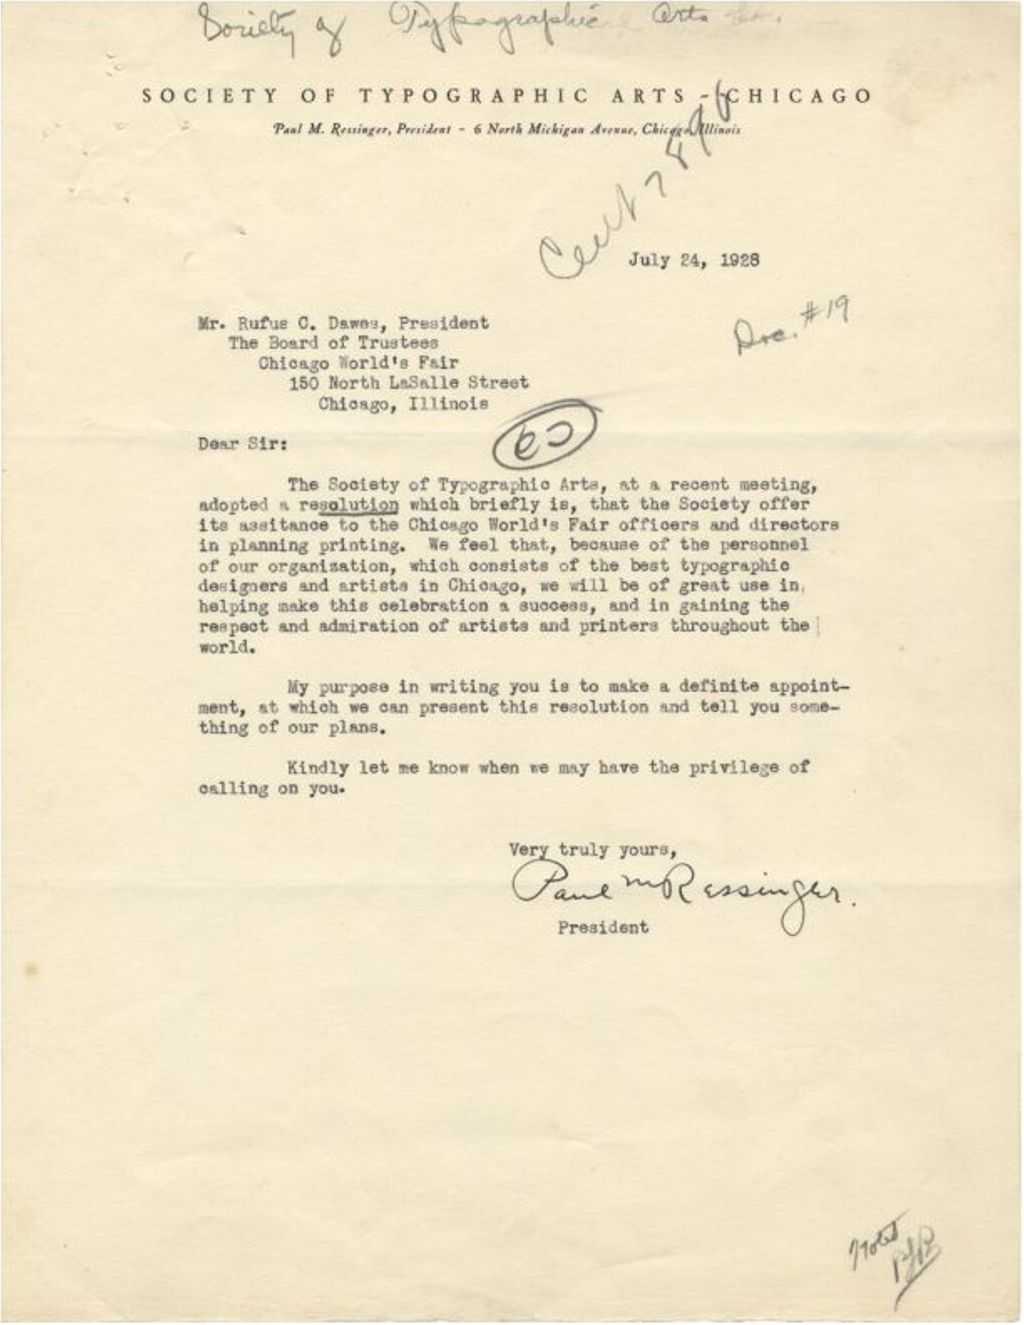 Letter from Paul Ressinger, President of the STA, to Rufus Dawes, President of the Board of Trustees, Chicago's World's Fair